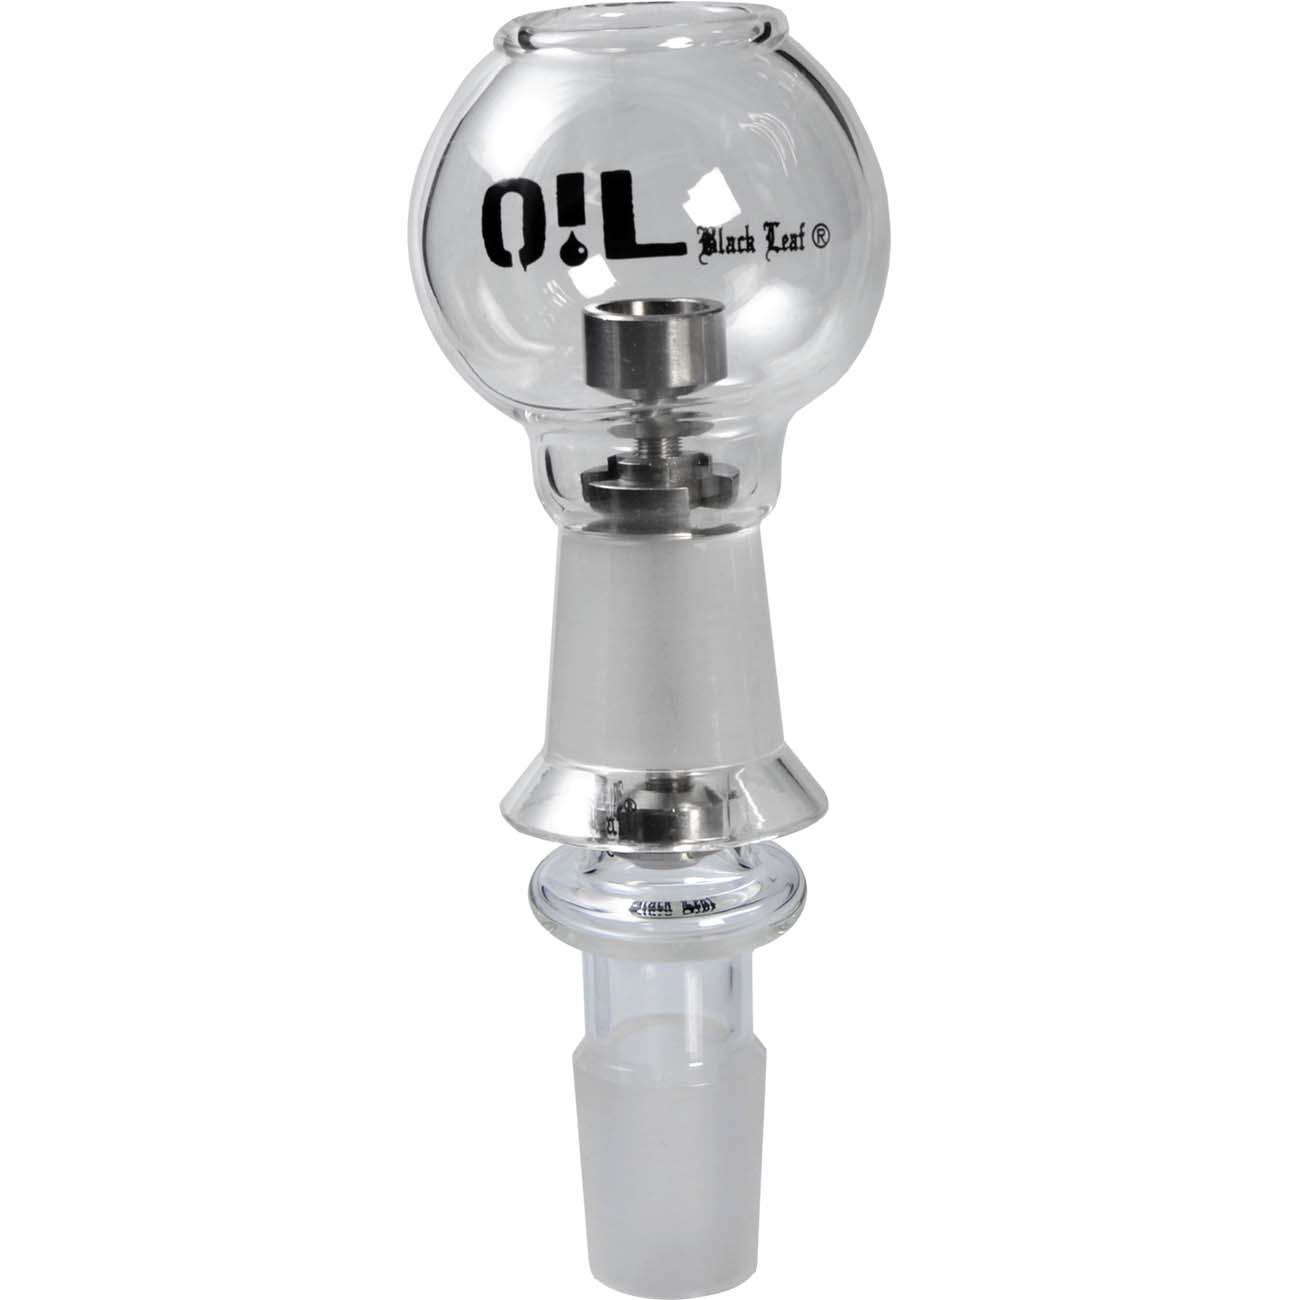  Black Leaf O!L Öl-Bong-Zubehör für OiL-Rig, Dabbing: Öl-Kopf zum  Verdampfen von Öl, 115 x 40 mm, NS 14 (14,5 mm), Glas, klar, Essenz-Aufsatz 3-teilig